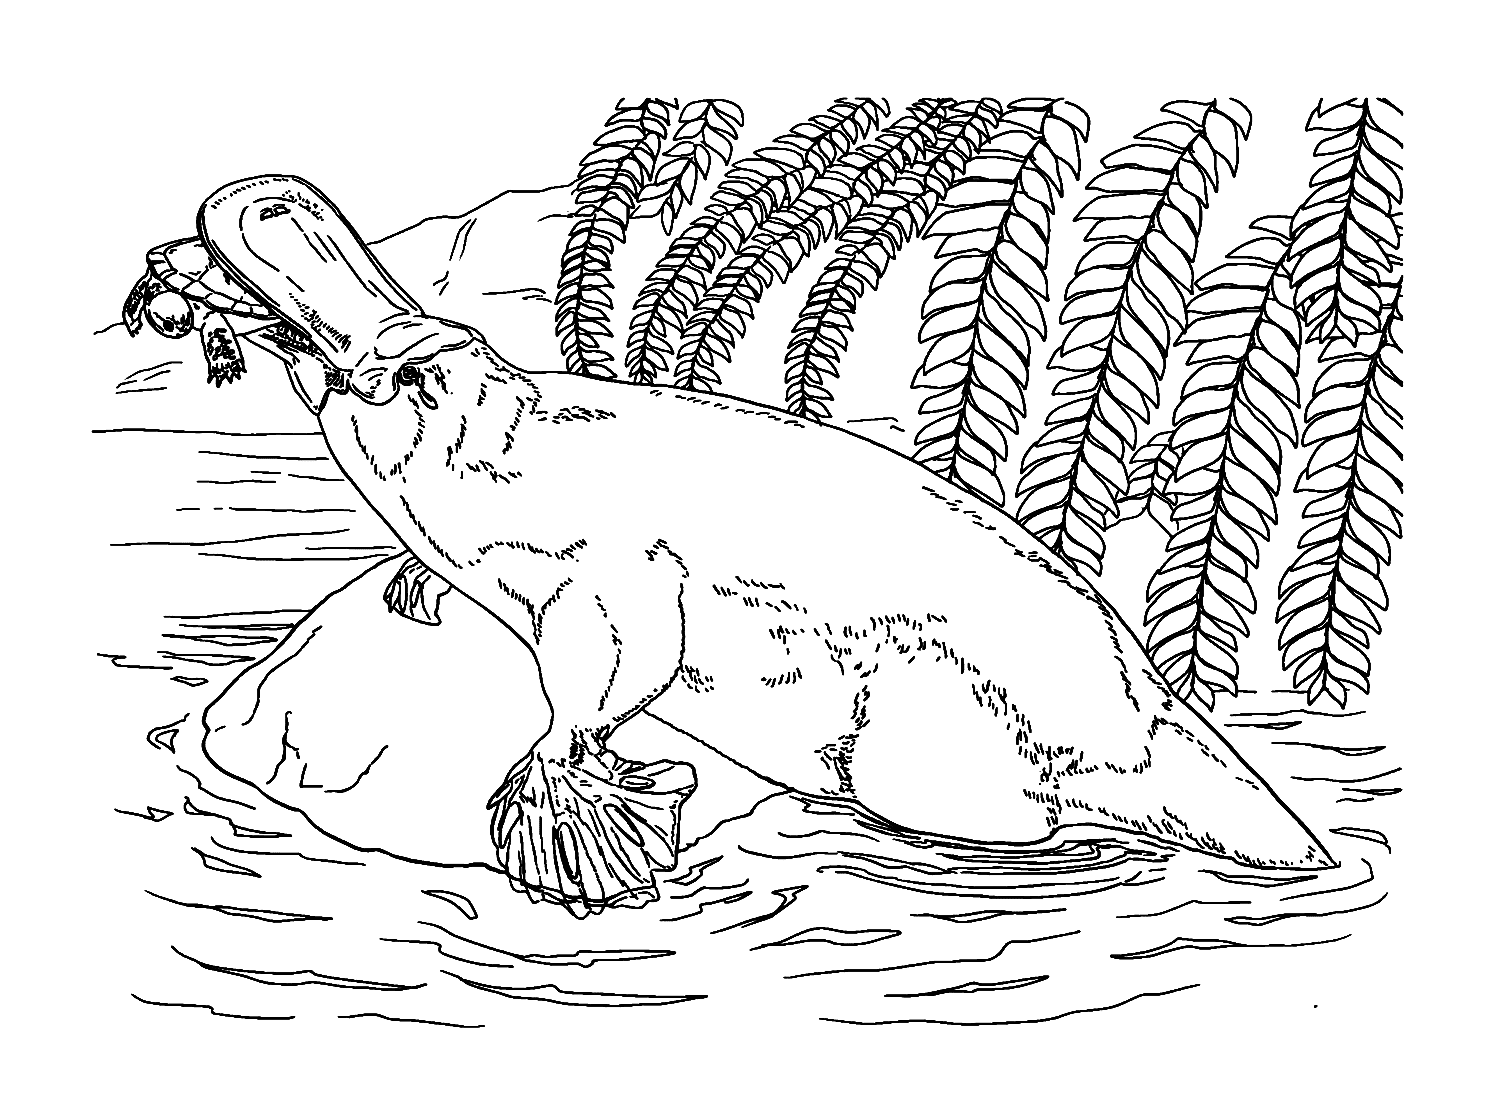 Schnabeltier kriecht auf einem Felsen von Platypus